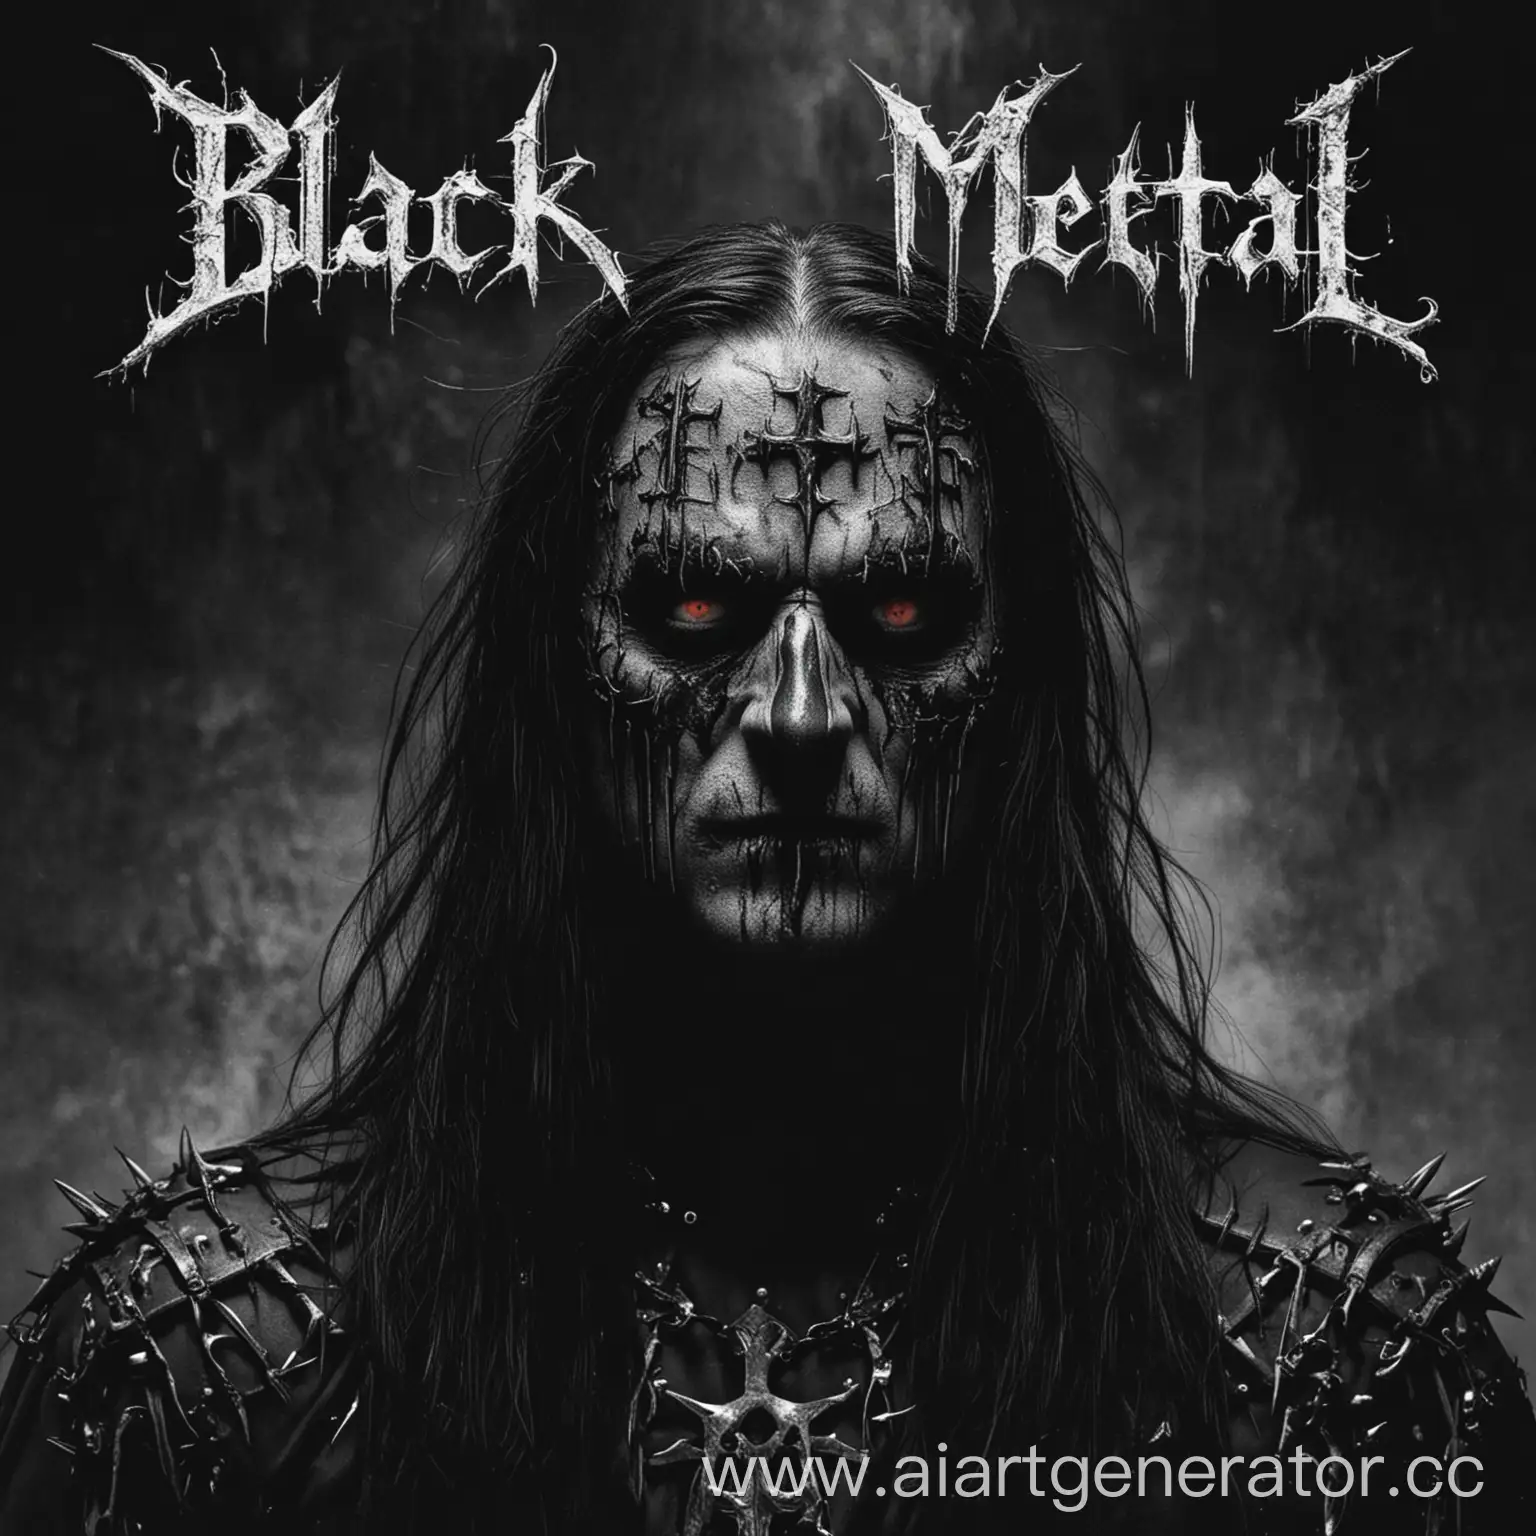 обложка для блек метал альбома